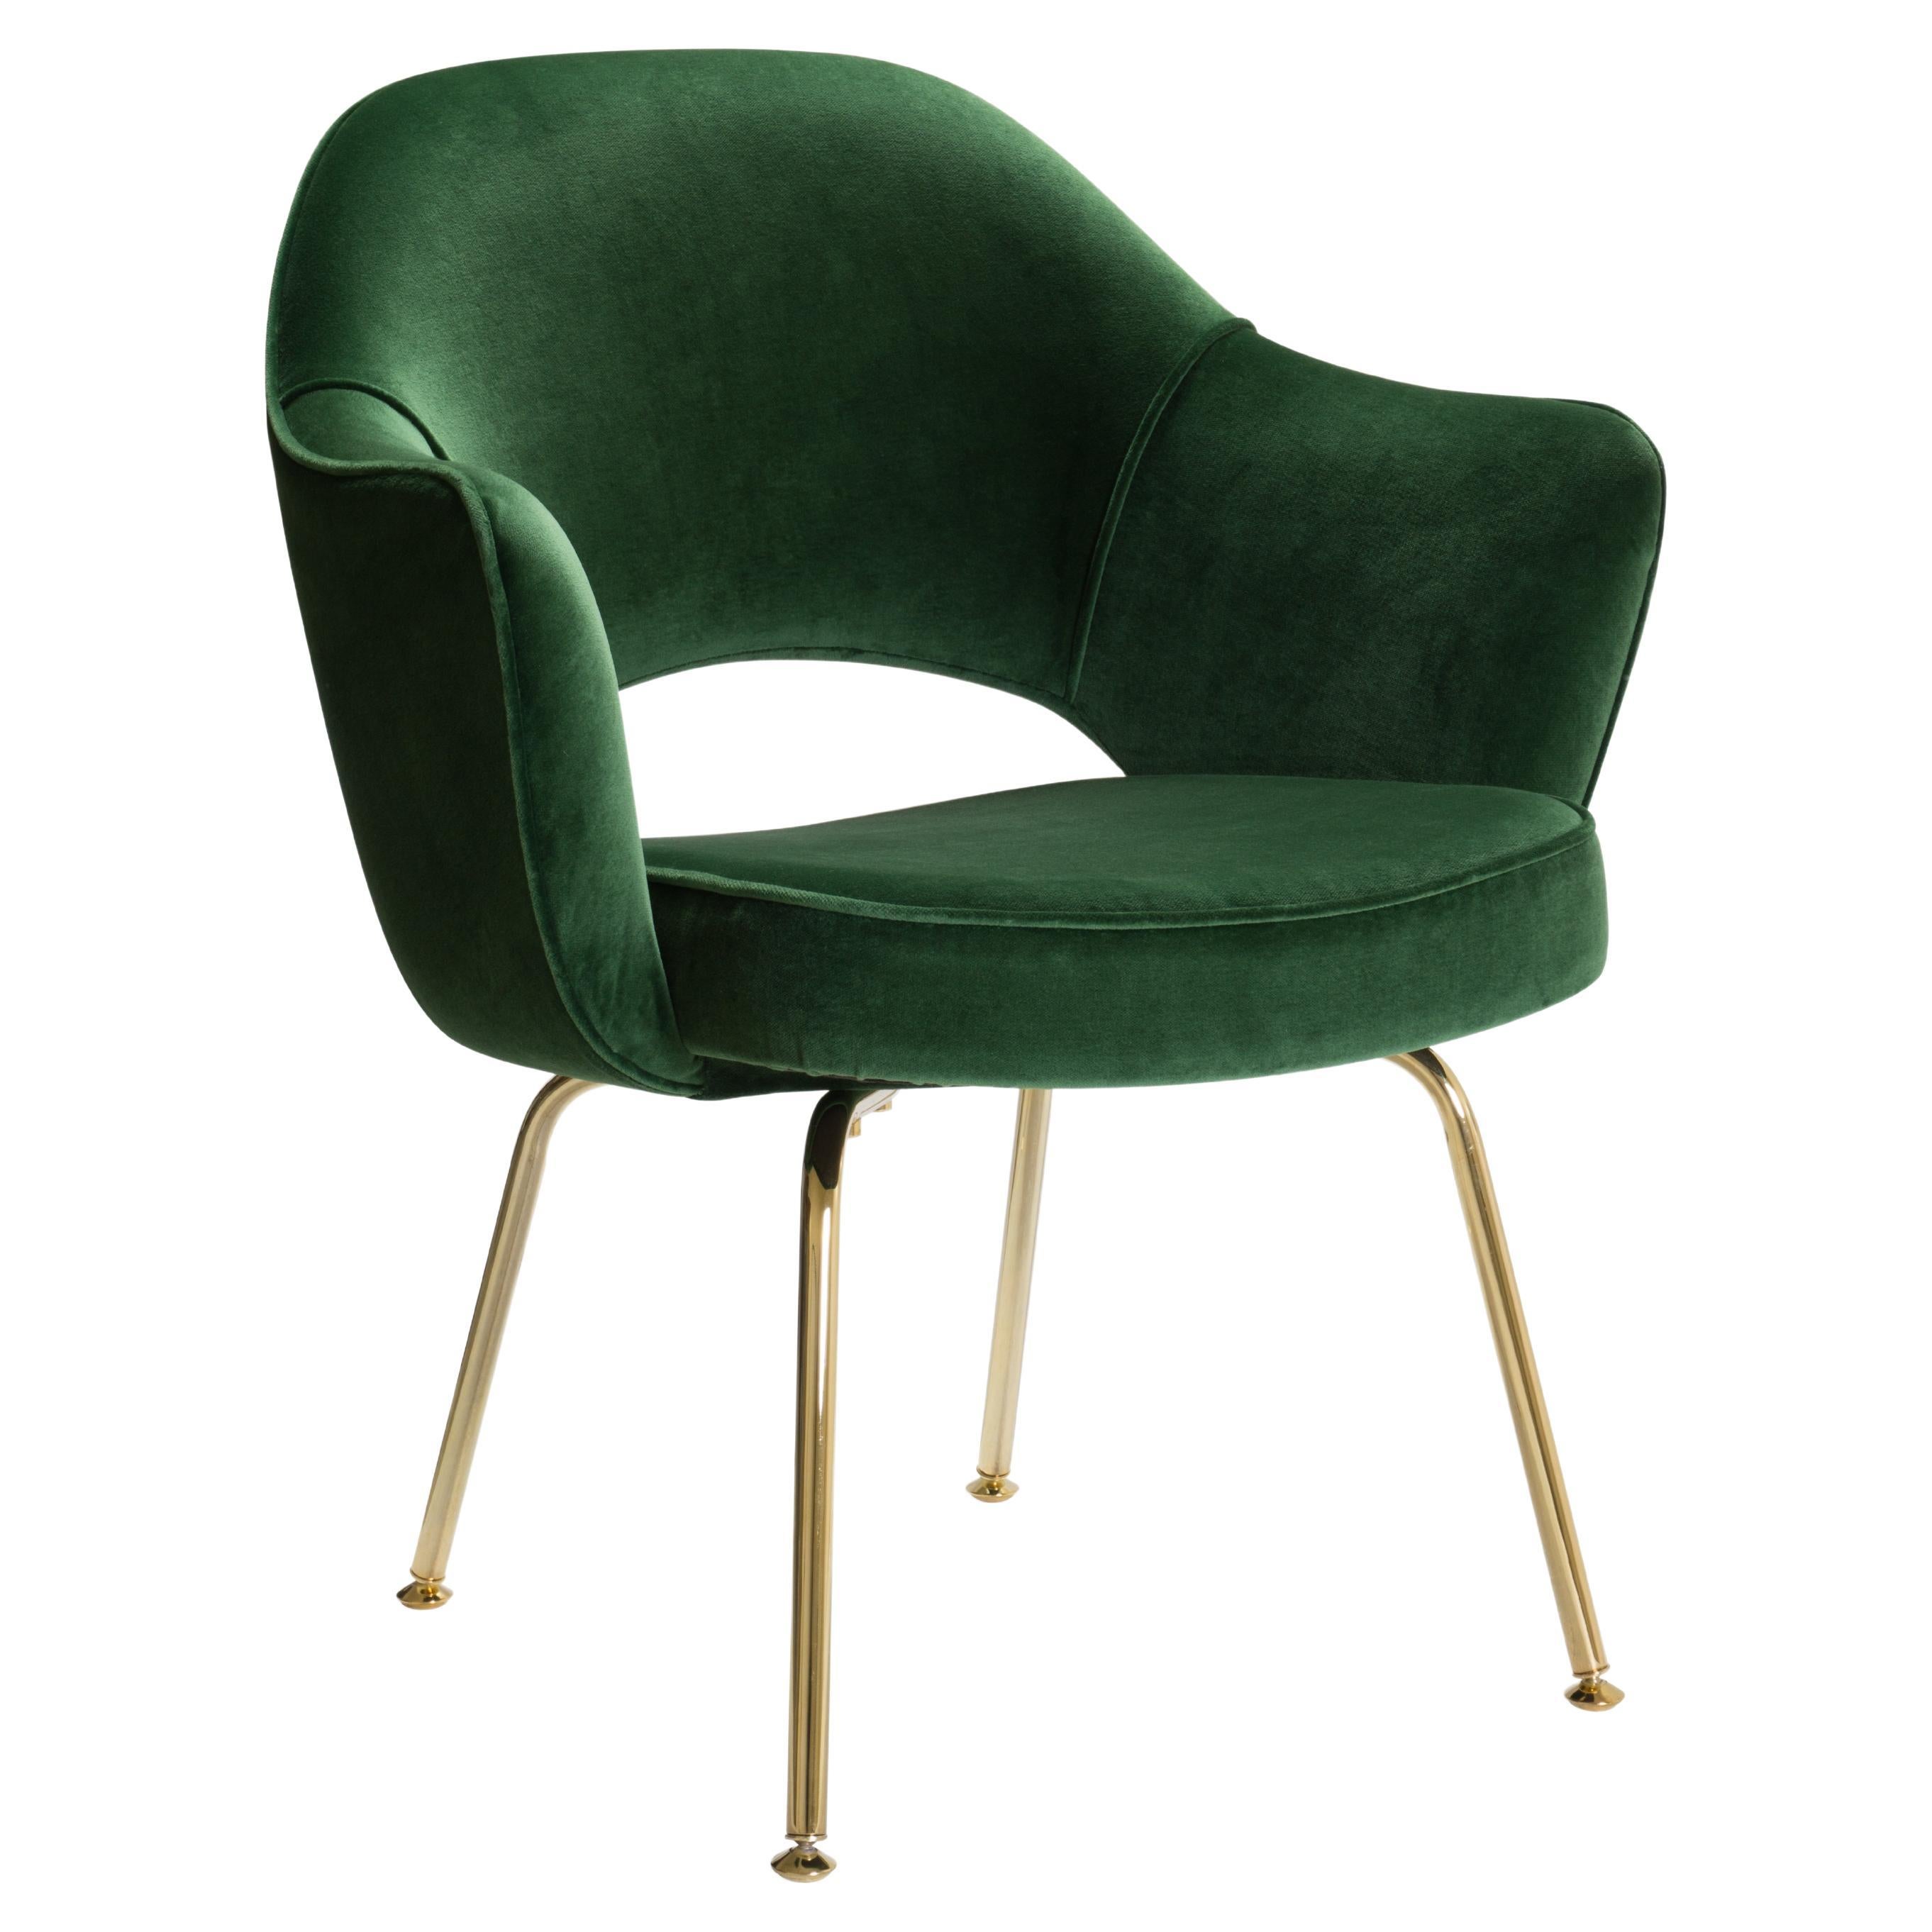 Wir haben diesen Satz von 6 Eero Saarinen für Knoll Chefsessel restauriert und dabei einen italienischen Samt aus 100% Baumwolle in der Farbe Emerald verwendet. Erfahrene Handwerker haben jeden einzelnen Stuhl wieder zum Leben erweckt, damit er auch